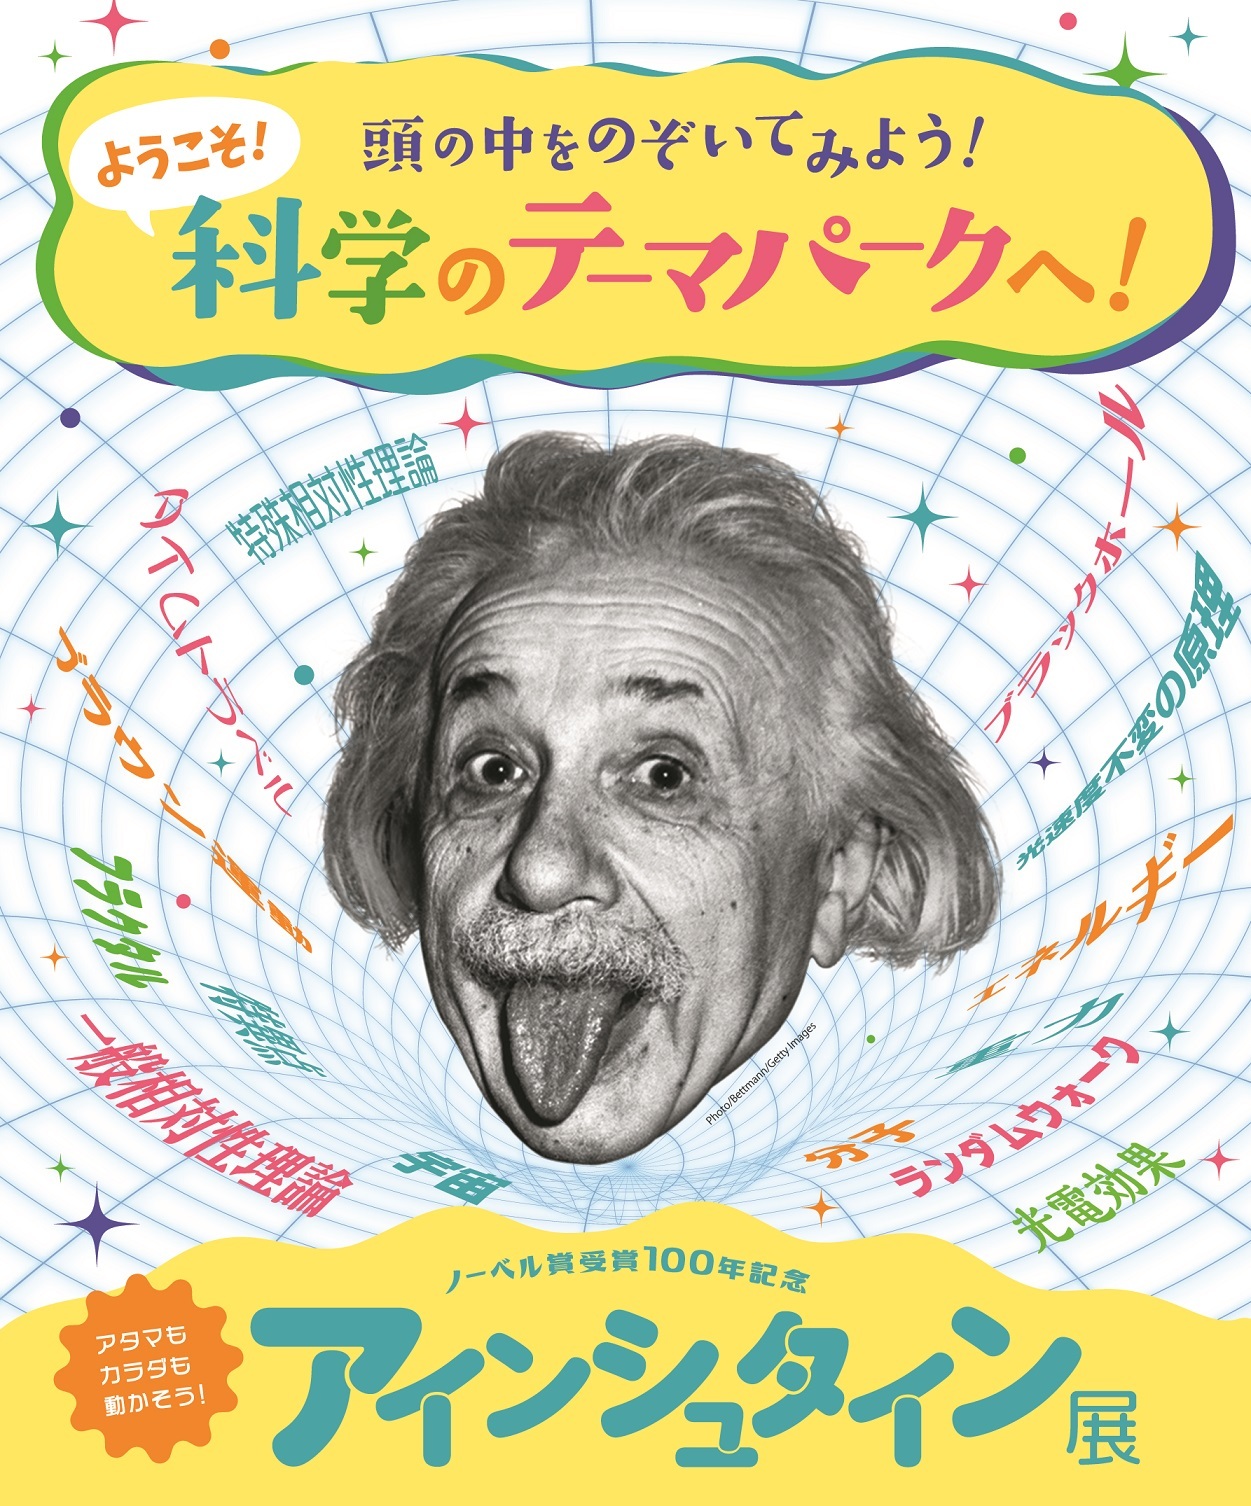 アインシュタインの頭の中を楽しみながら体験できる ノーベル賞受賞100年記念 アインシュタイン展 が大阪市立自然史博物館でスタート Spice エンタメ特化型情報メディア スパイス